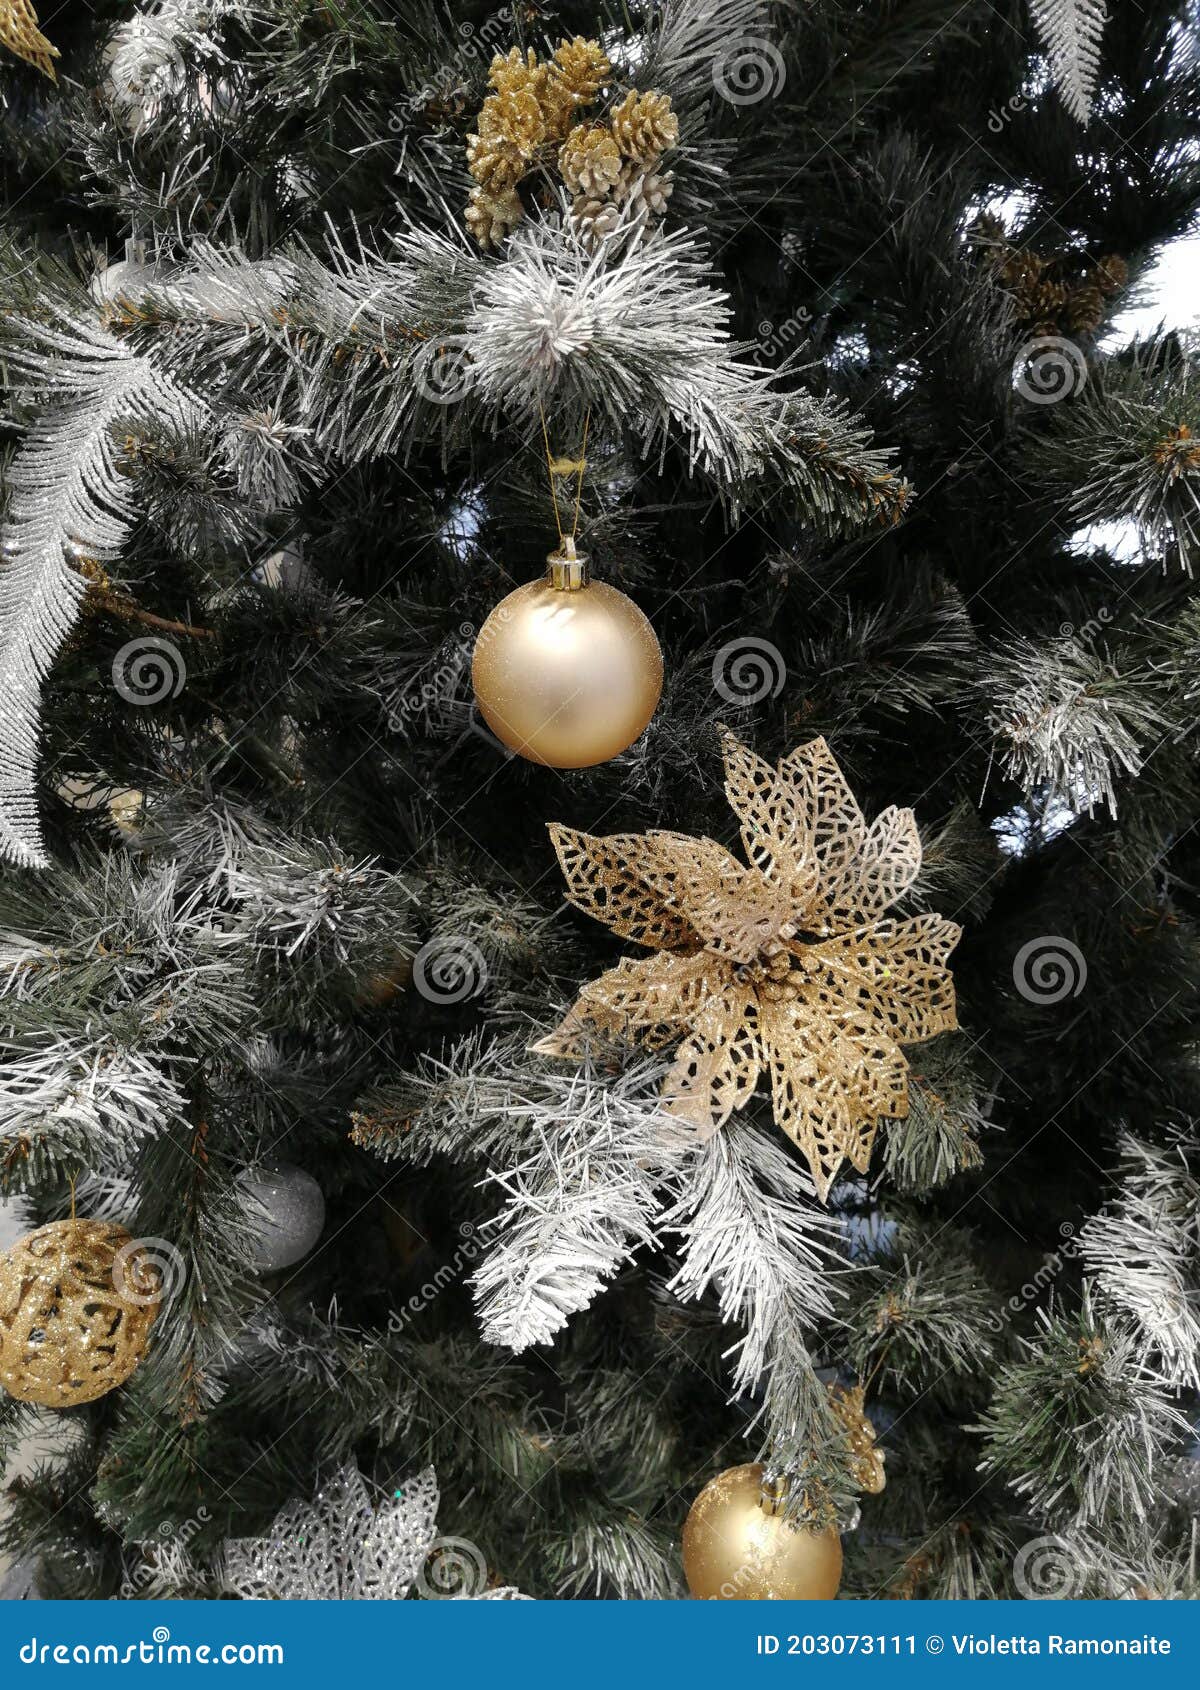 Buque de guerra frente Facturable árbol De Navidad Dorado De Plata Cerrar Y Bola De Decoración De árboles De  Navidad Imagen de archivo - Imagen de cierre, bola: 203073111